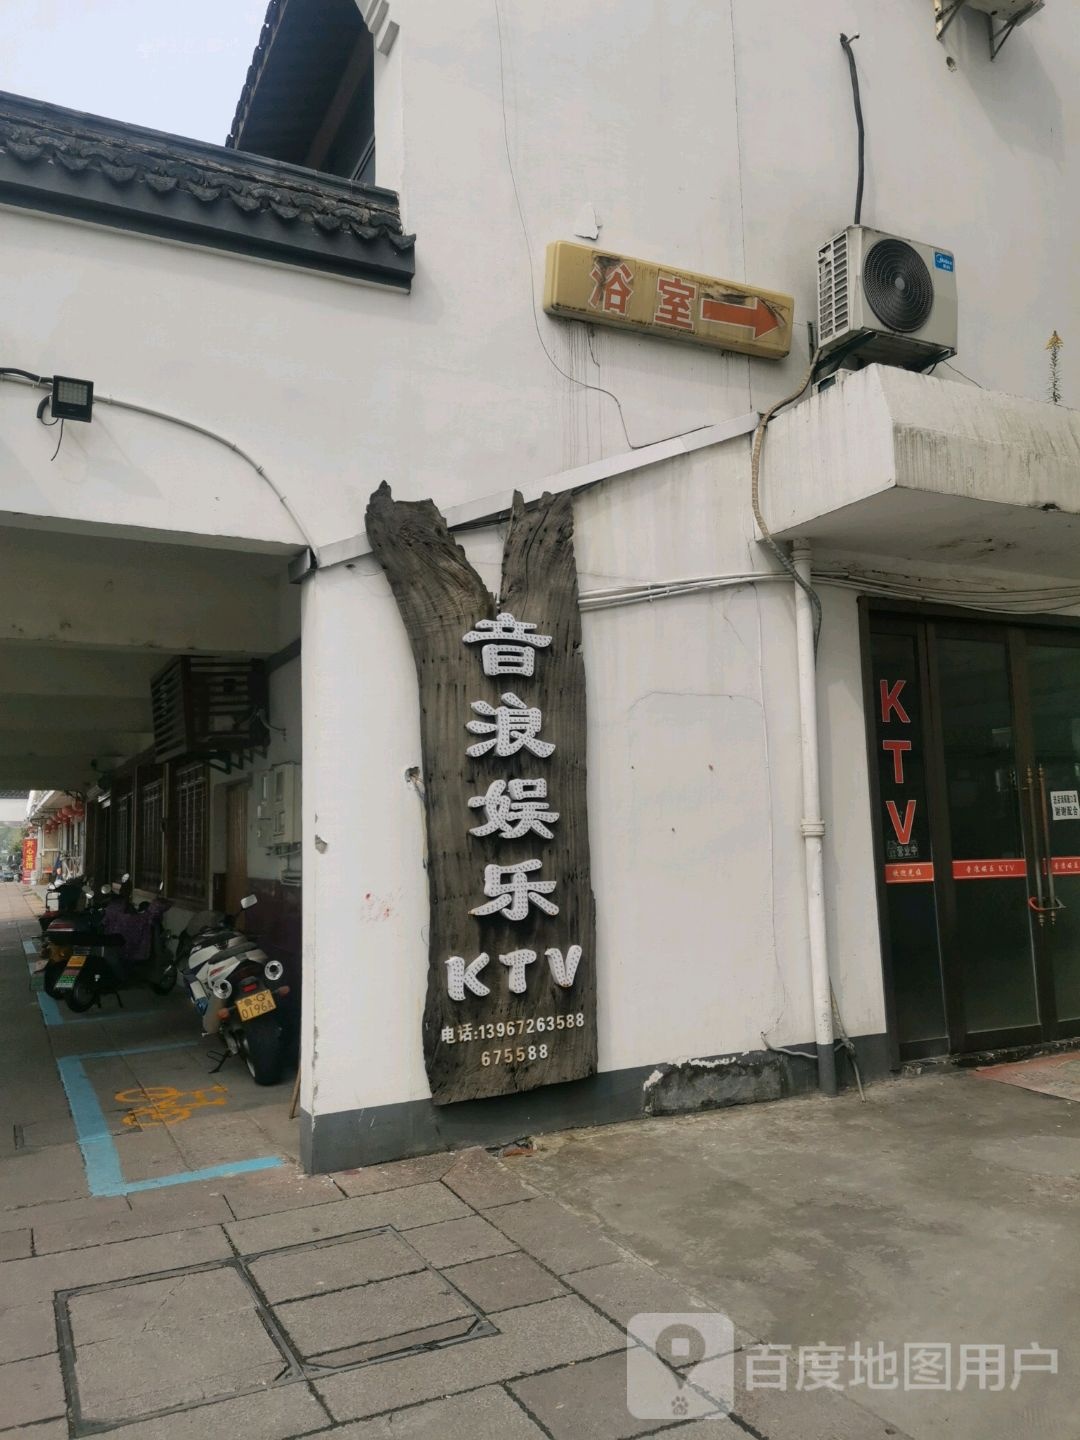 音浪娱乐KTV